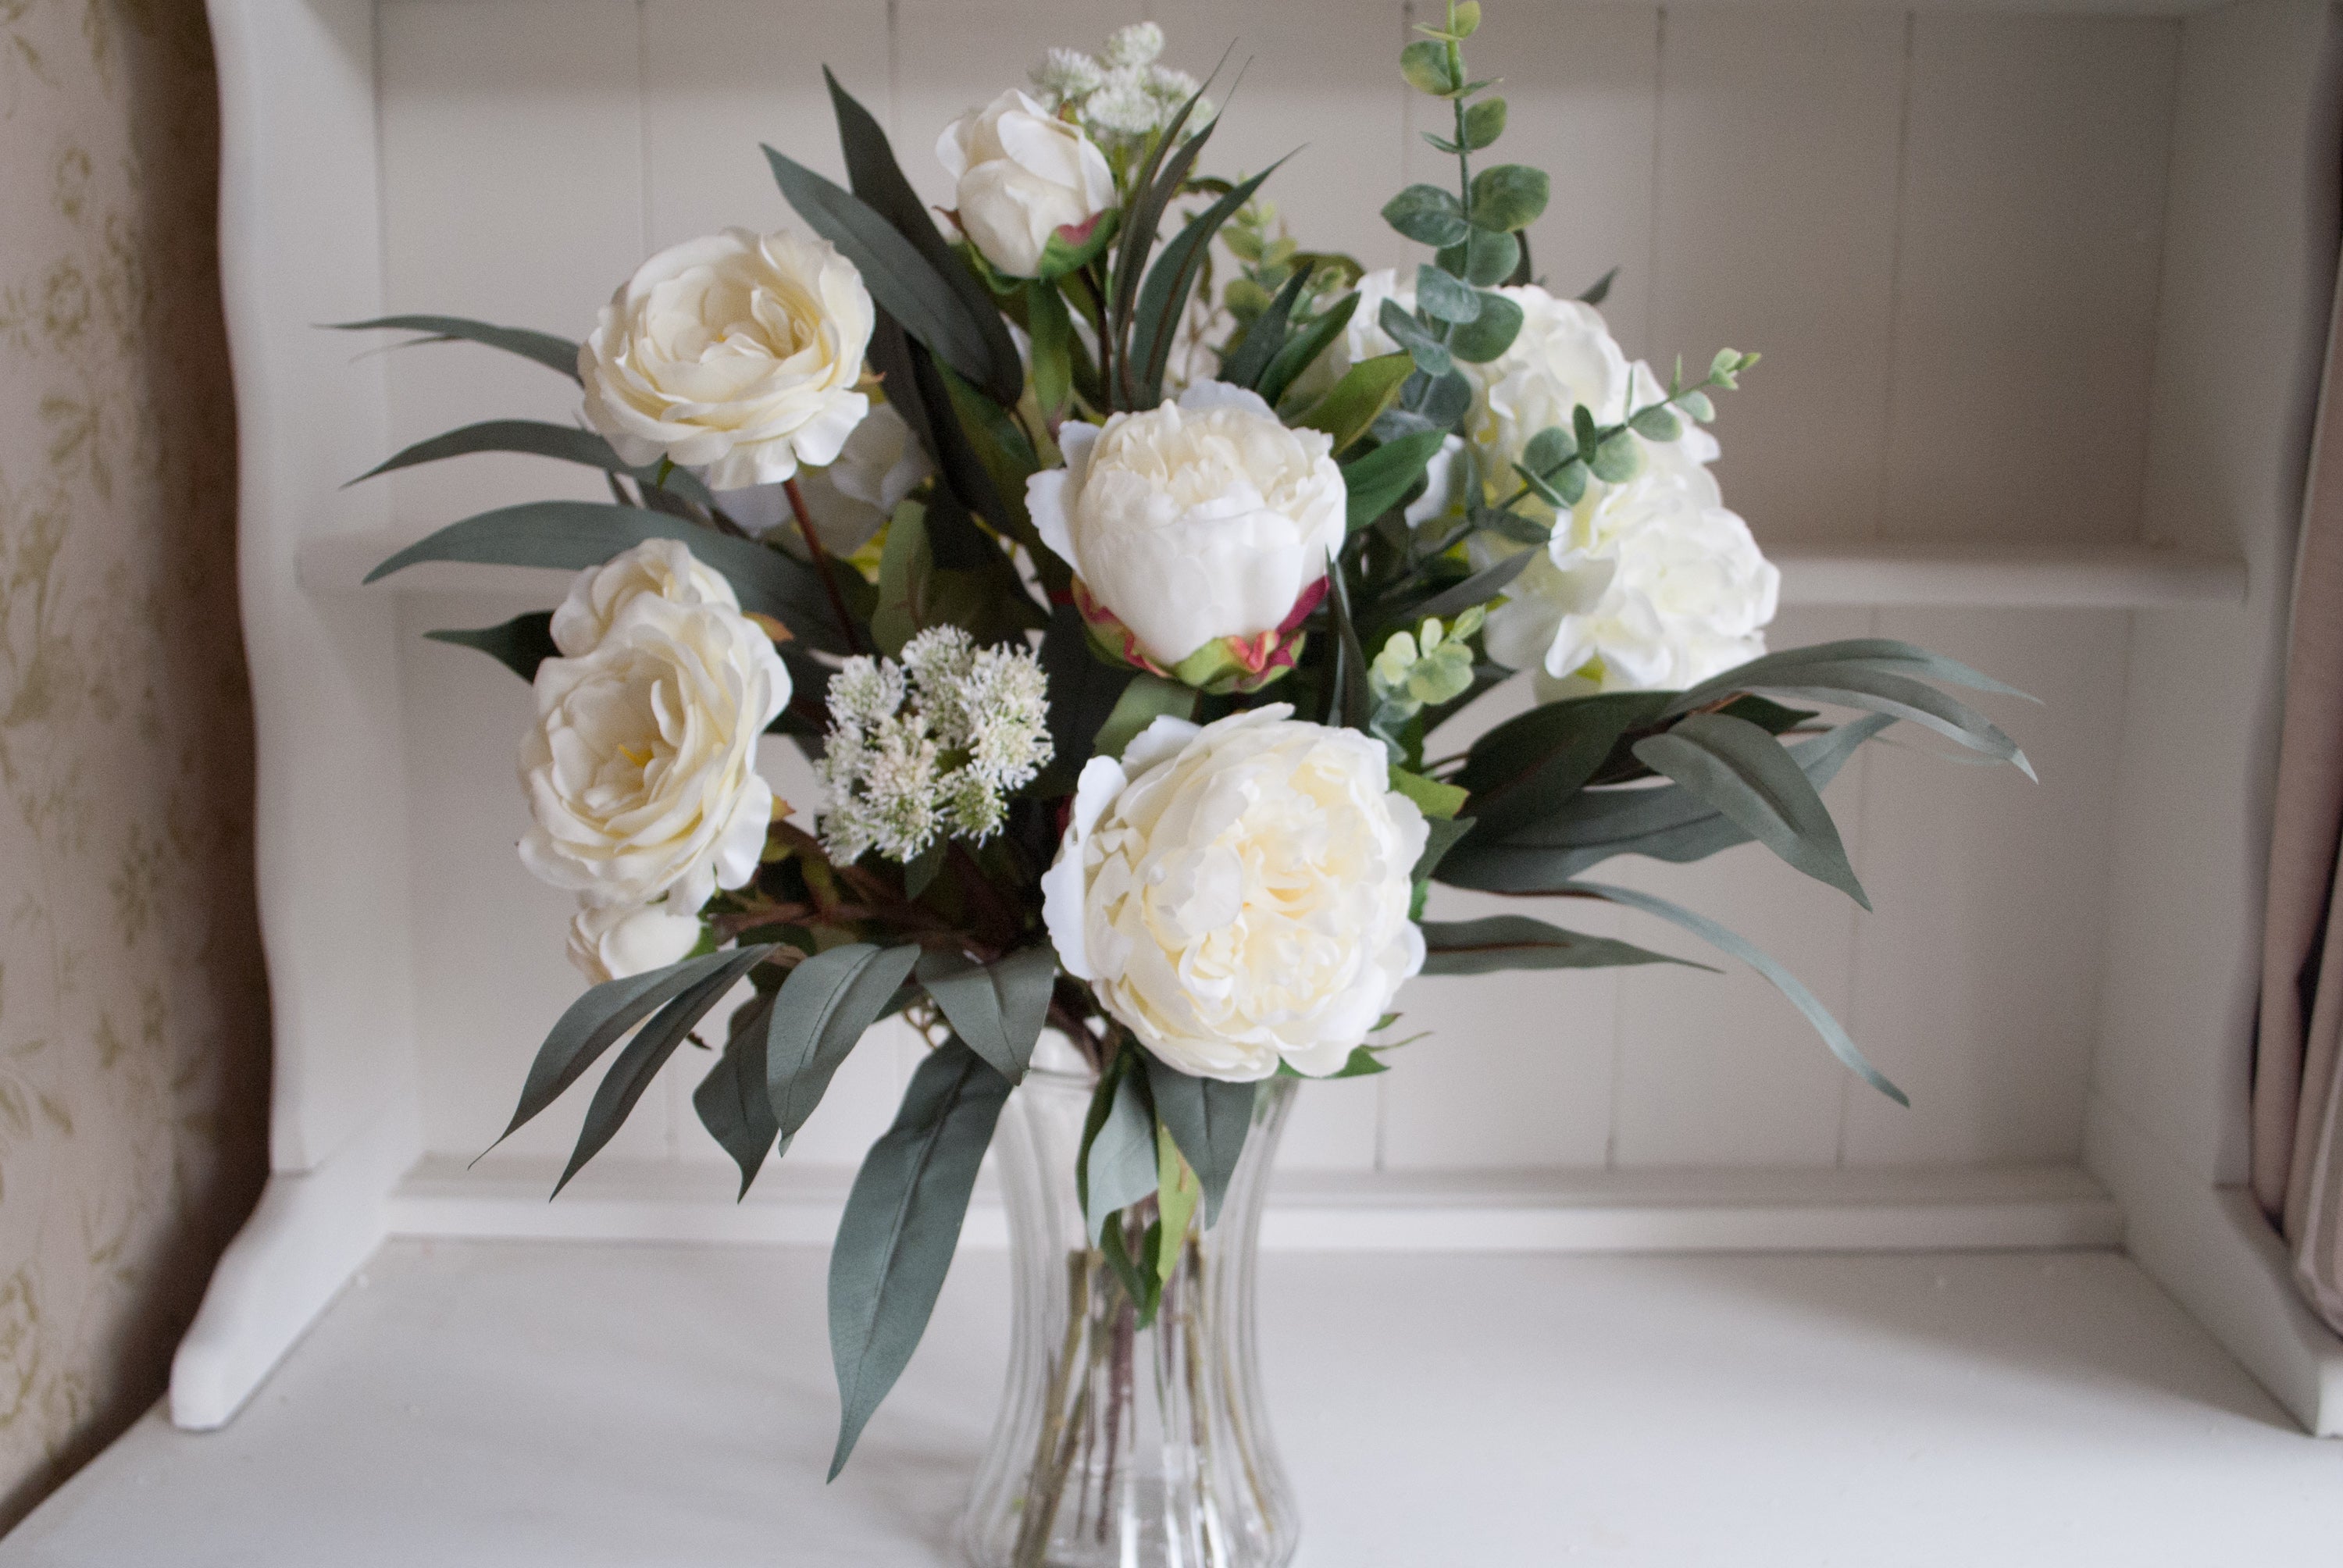 Solstice Lilies & Cedar Vase Ready, Hand Tied Bouquet (no vase) in